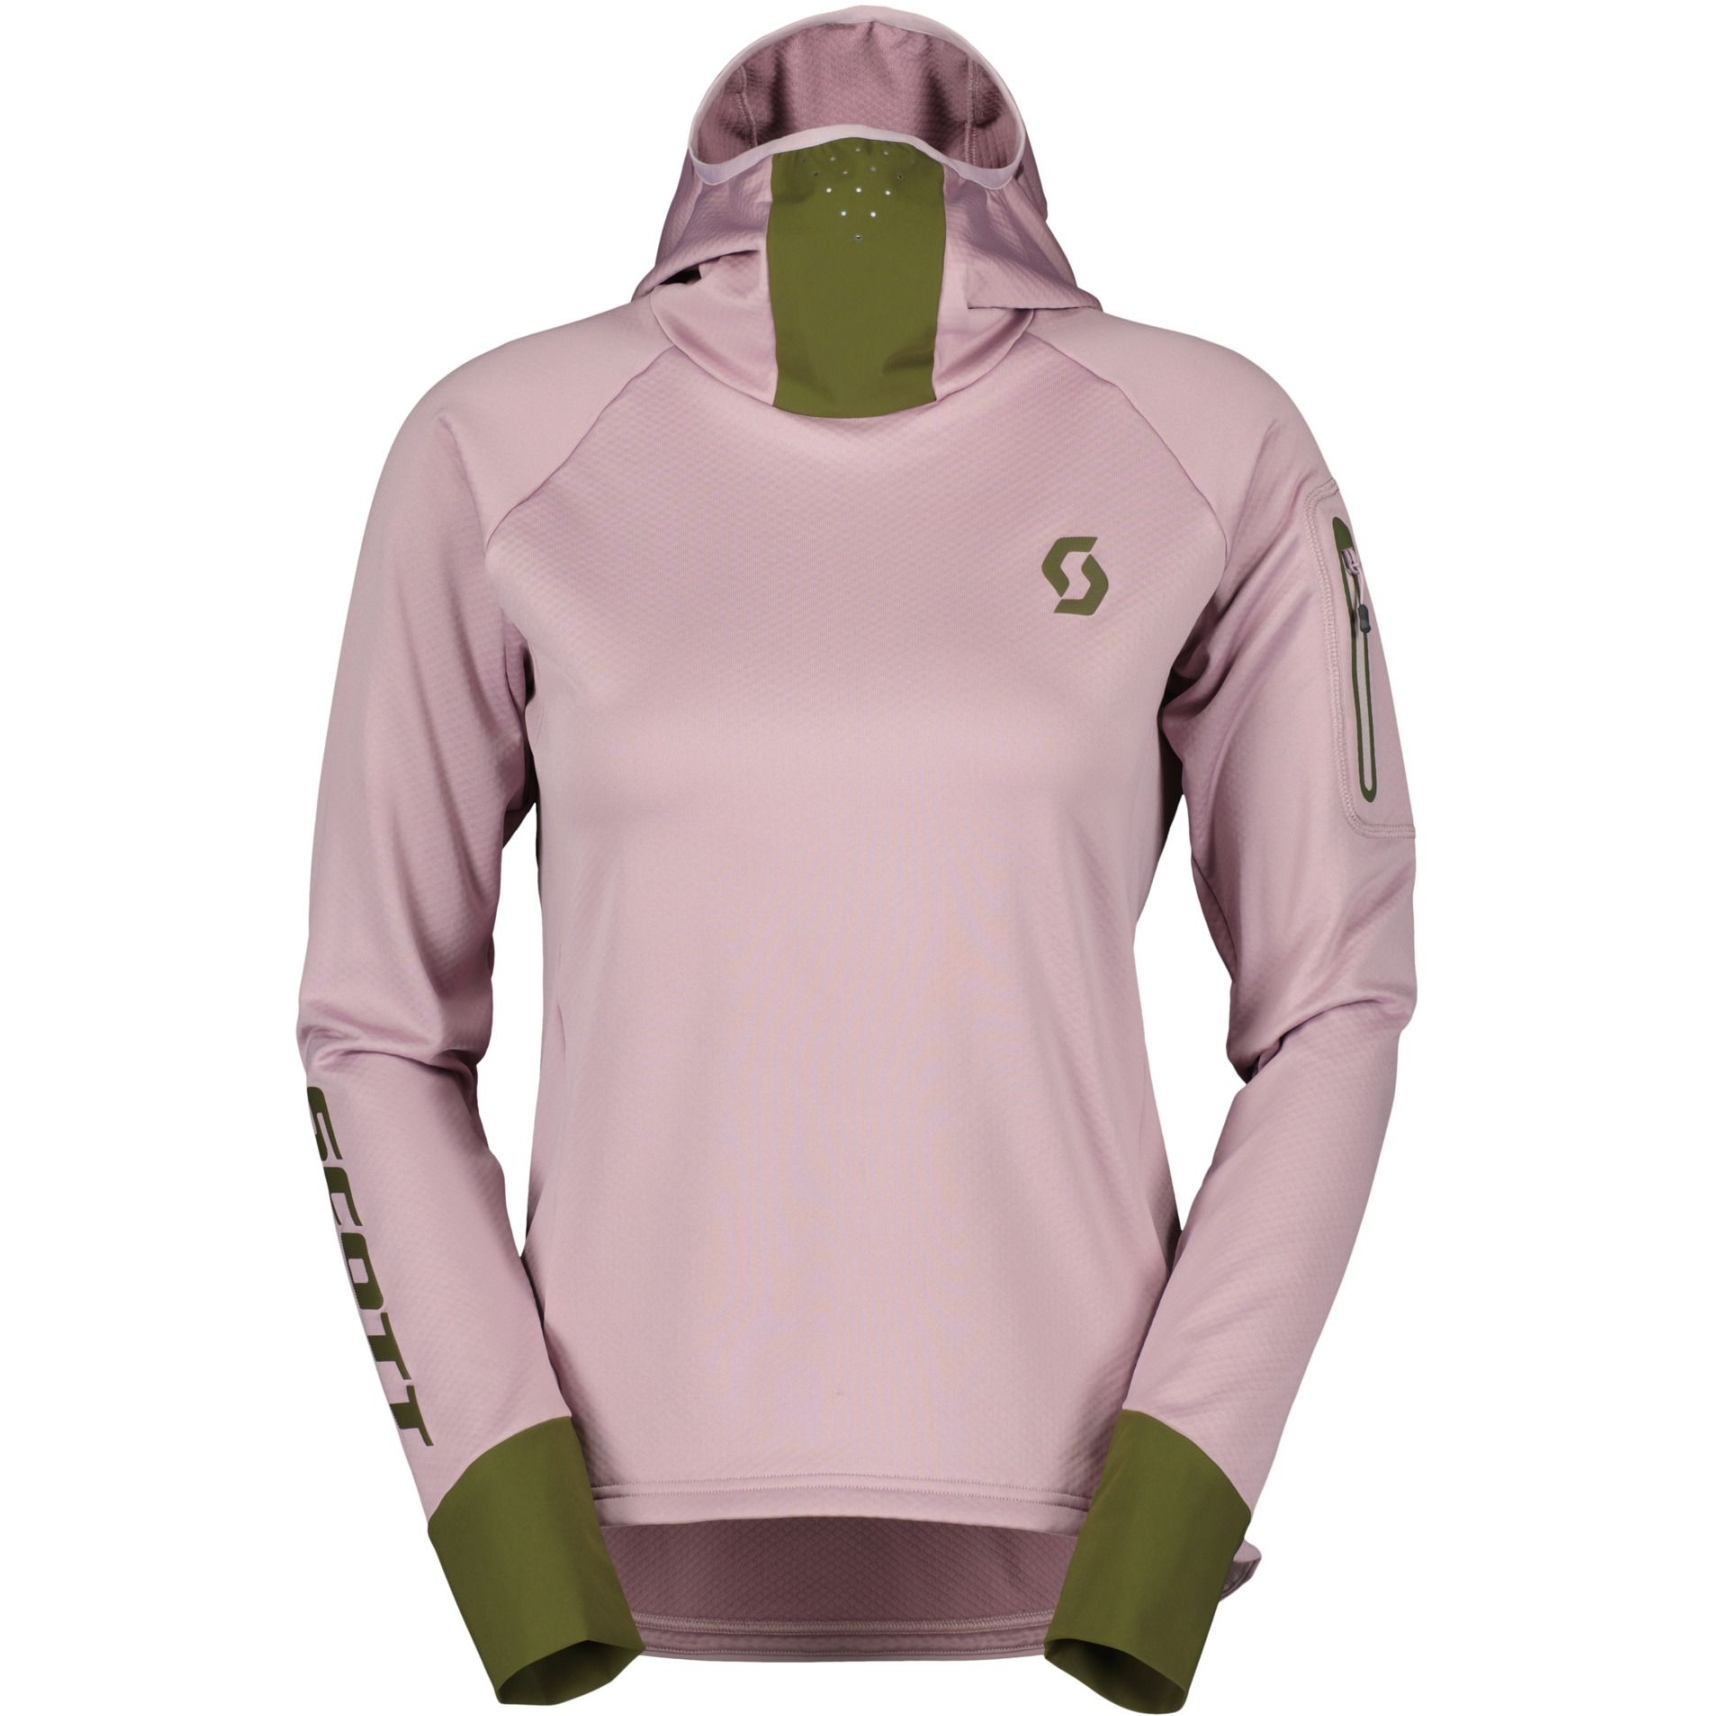 Produktbild von SCOTT Trail Storm Langarm Kapuzenpullover Damen - cloud pink